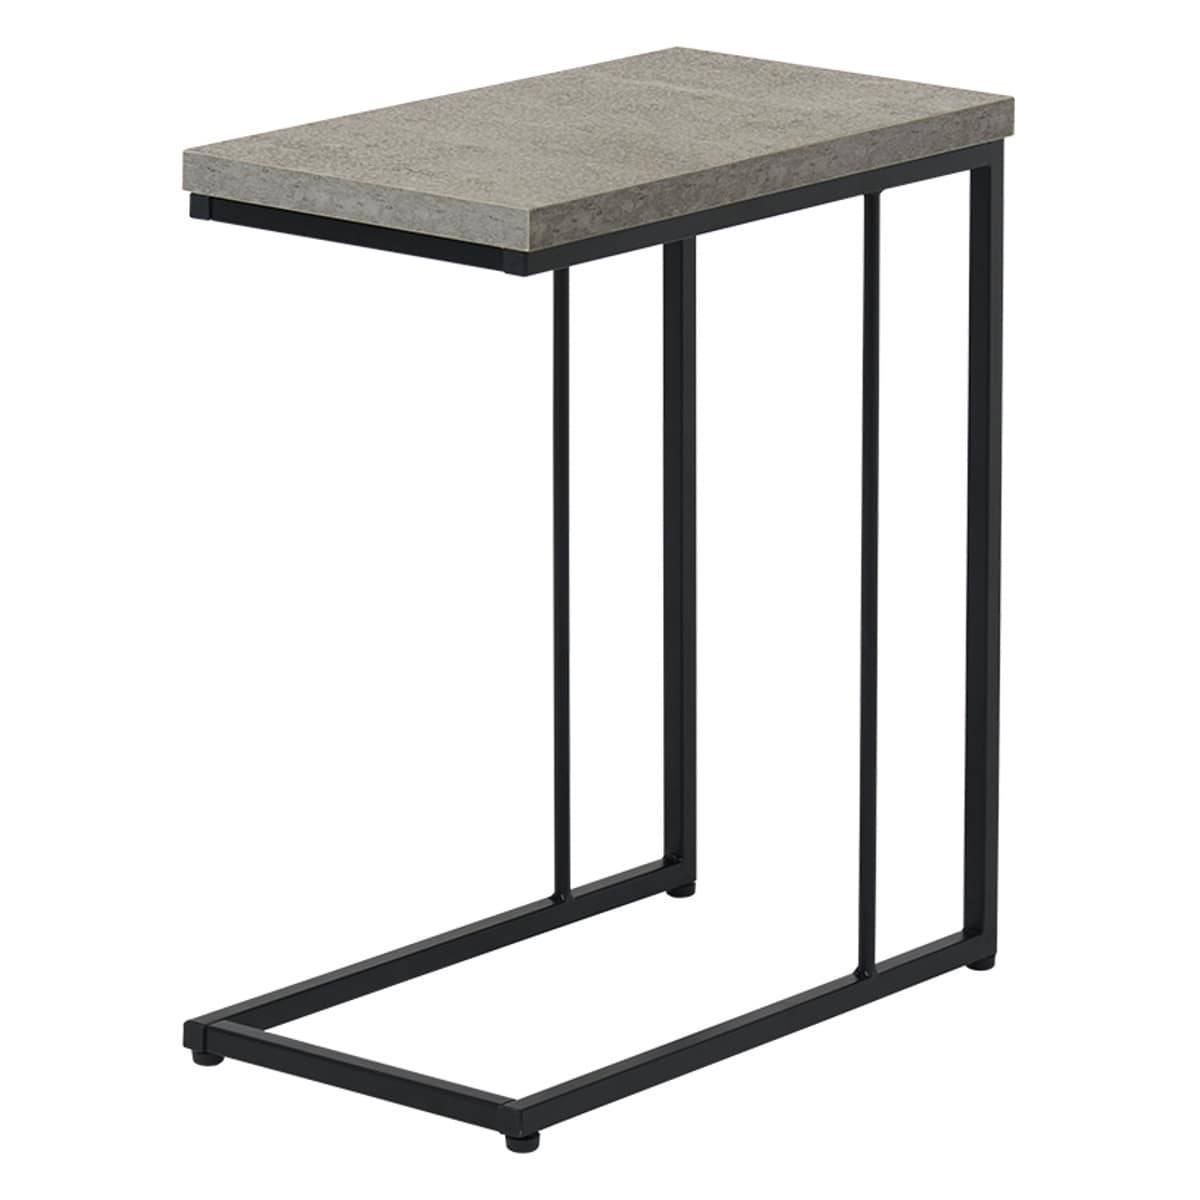 サイドテーブル スリム 軽量 お手入れ簡単 コの字型 コンクリート調 高